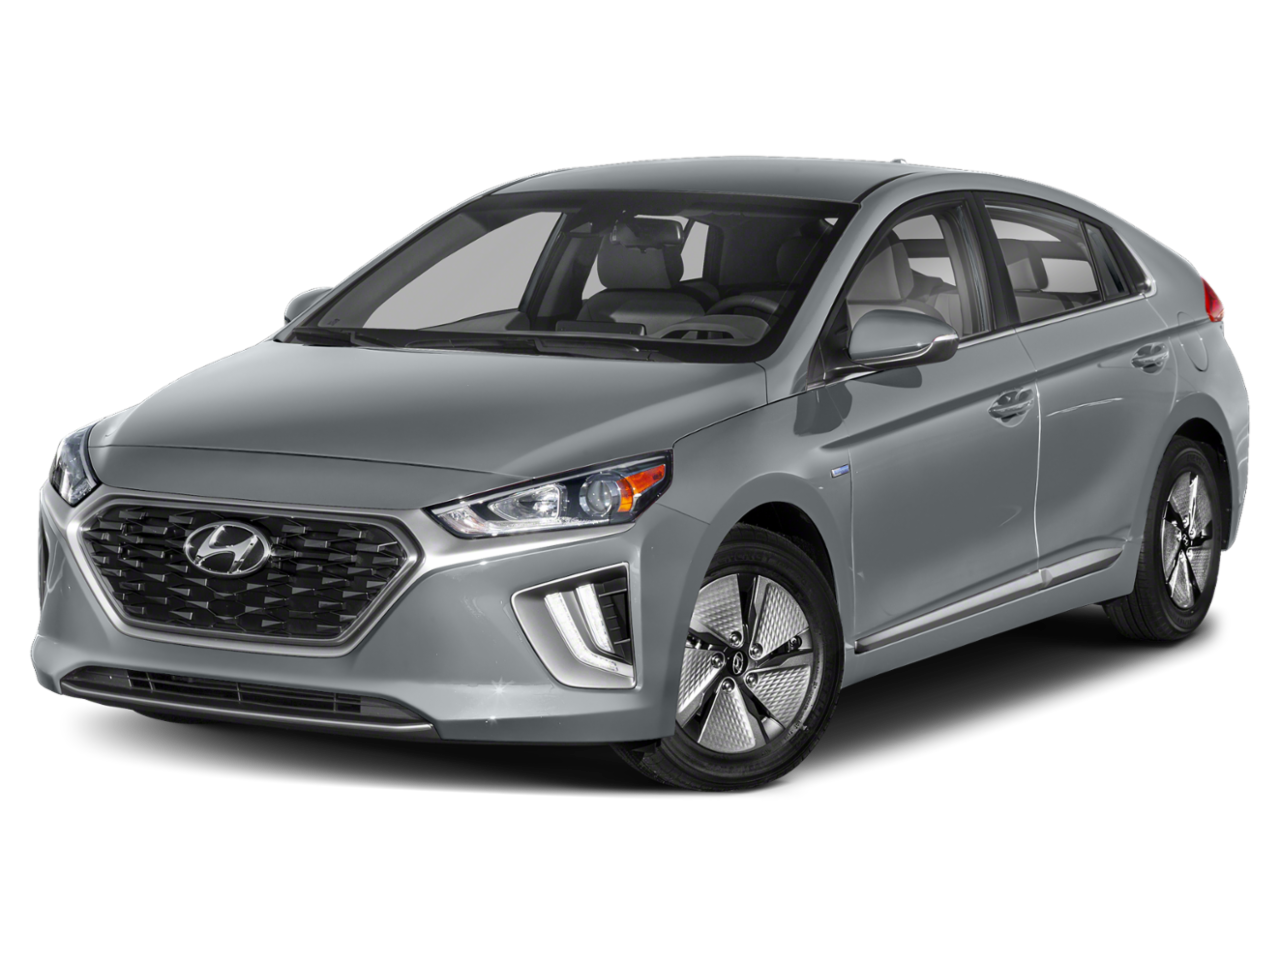 New 2020 Hyundai IONIQ Hybrid in Scranton, PA | Dickson ...